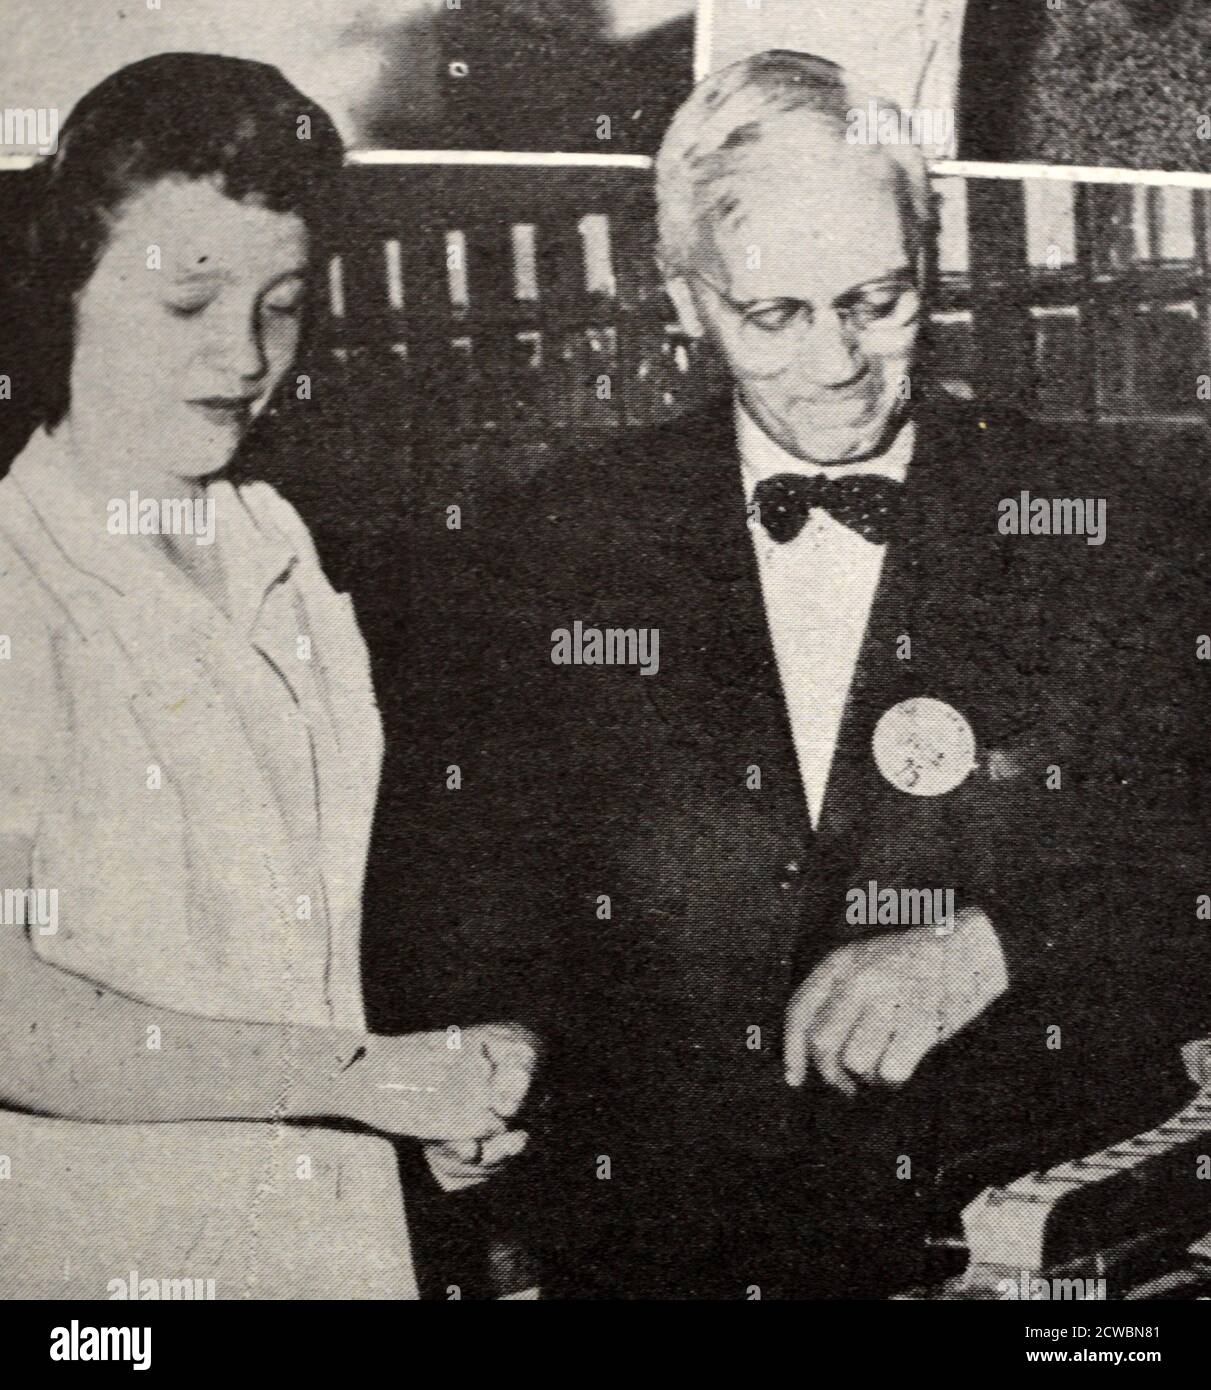 Schwarz-Weiß-Fotografie zeigt Bilder zu Revolutionen in der modernen Wissenschaft; Professor Fleming in seinem Labor. Stockfoto